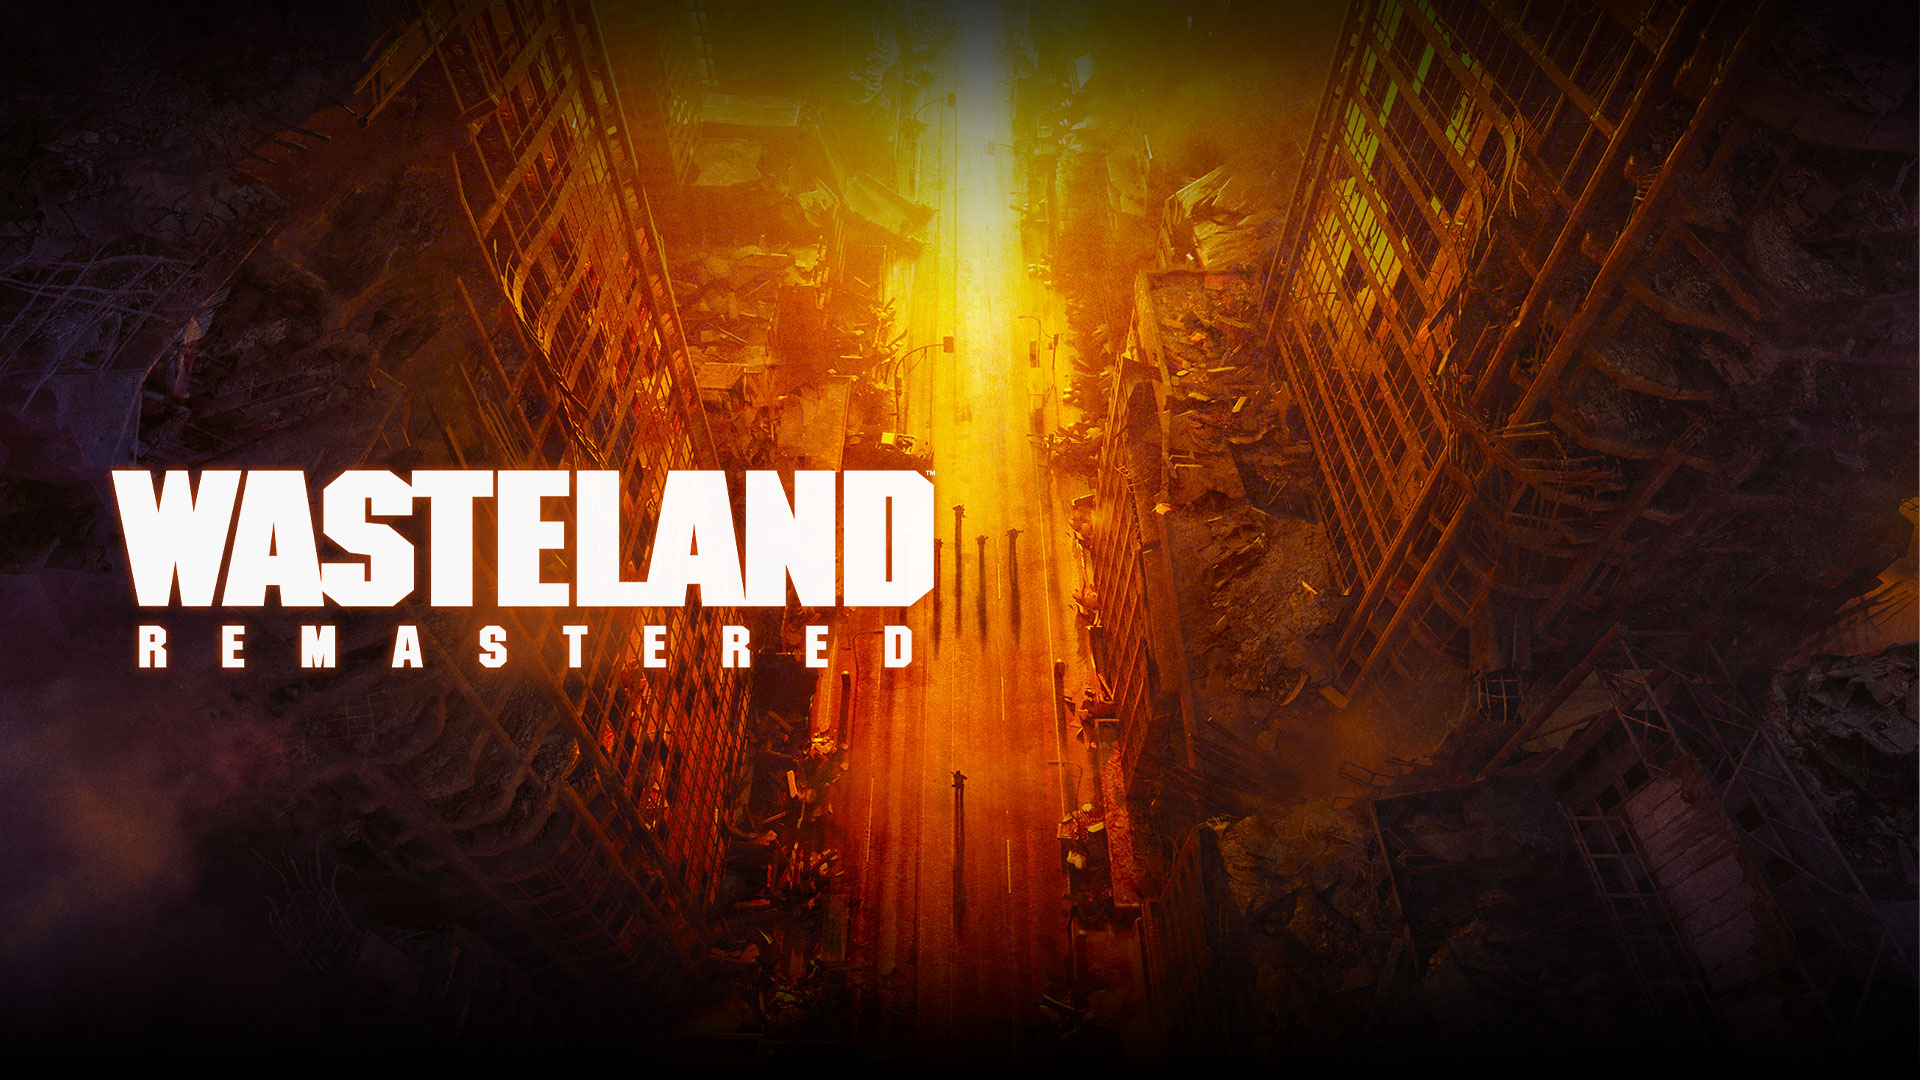 Wasteland Remastered, widok z góry na zrujnowane budynki i ludzi na ulicy w odcieniach żółtym, pomarańczowym i czerwonym